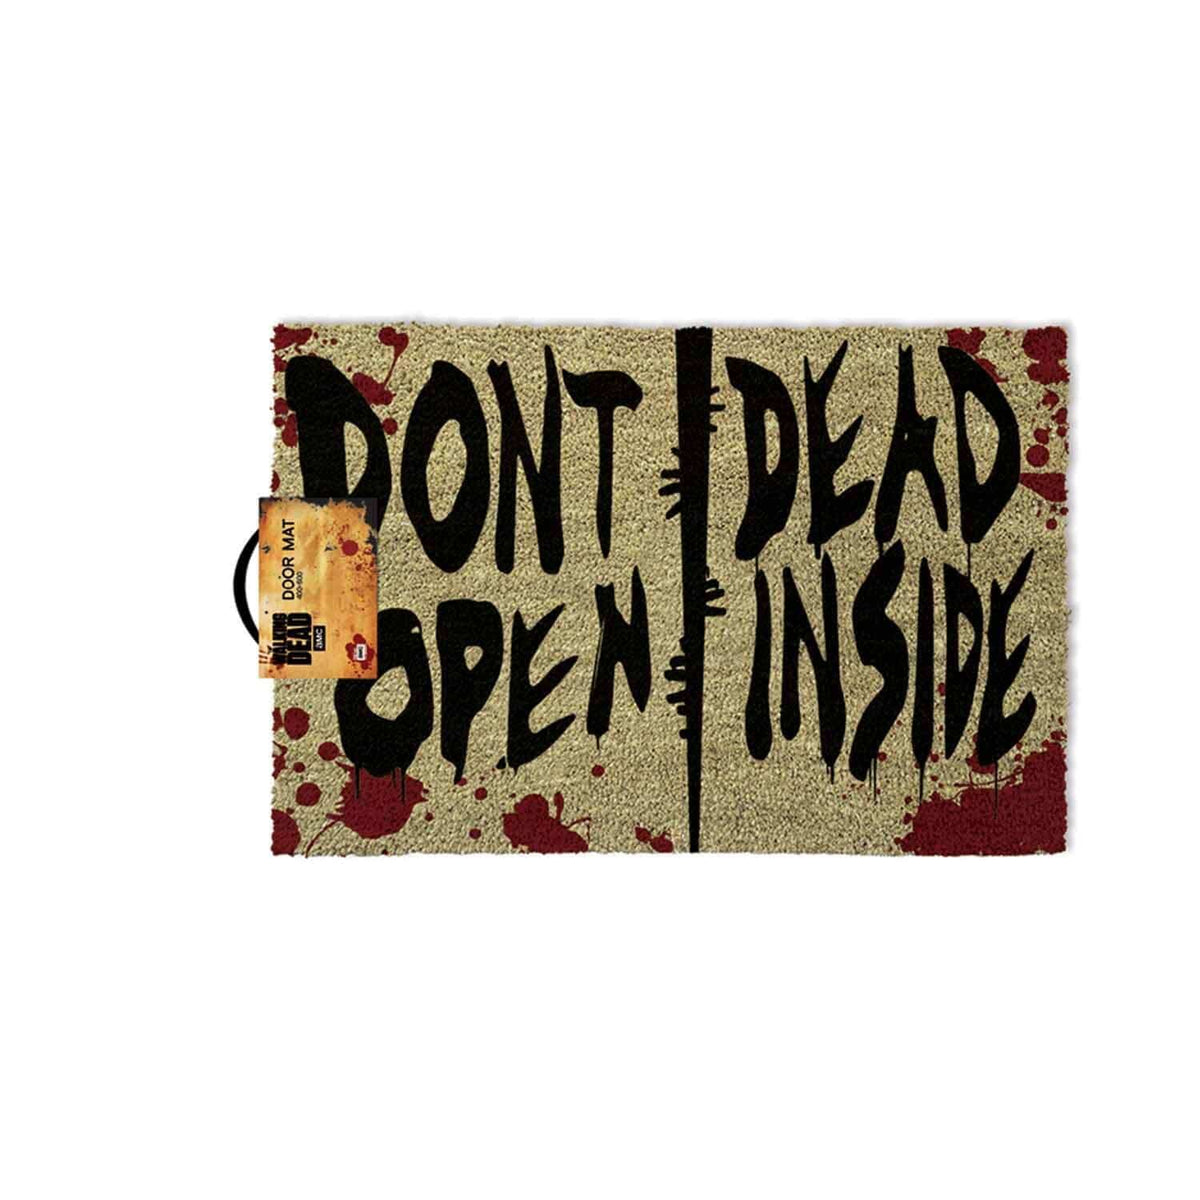 Walking Dead - Dont One, Dead Inside [Doormat]